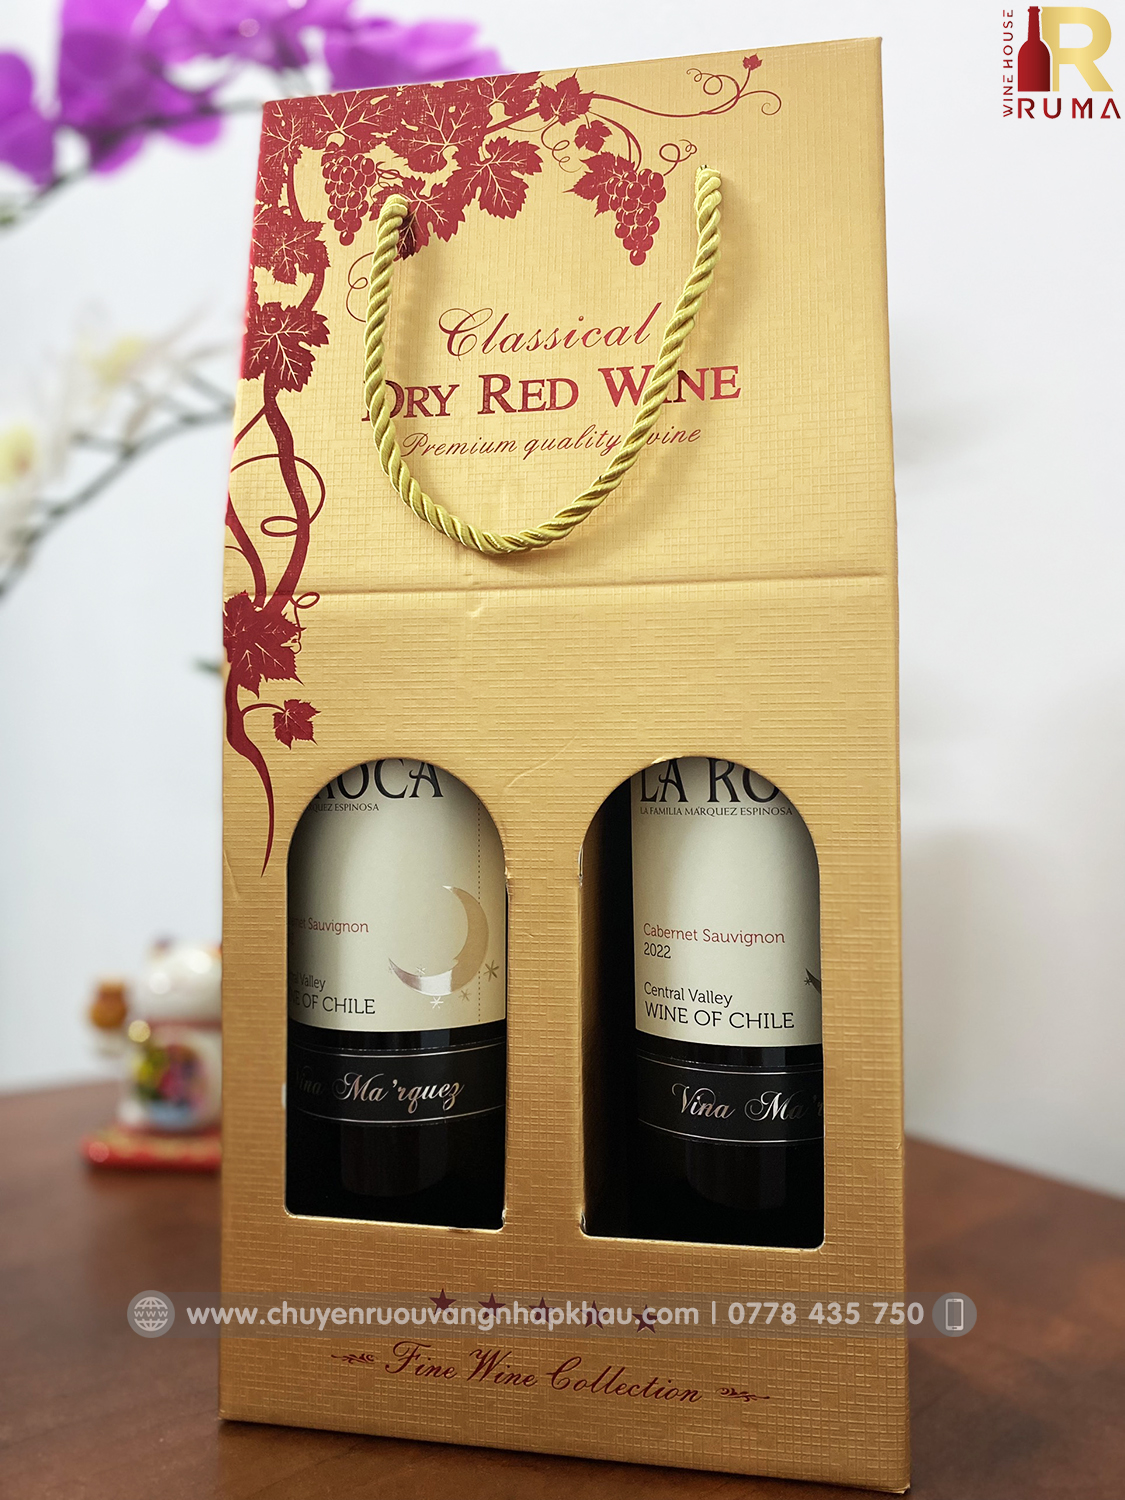 Set quà tặng hộp giấy 2 chai rượu vang Chile La Roca